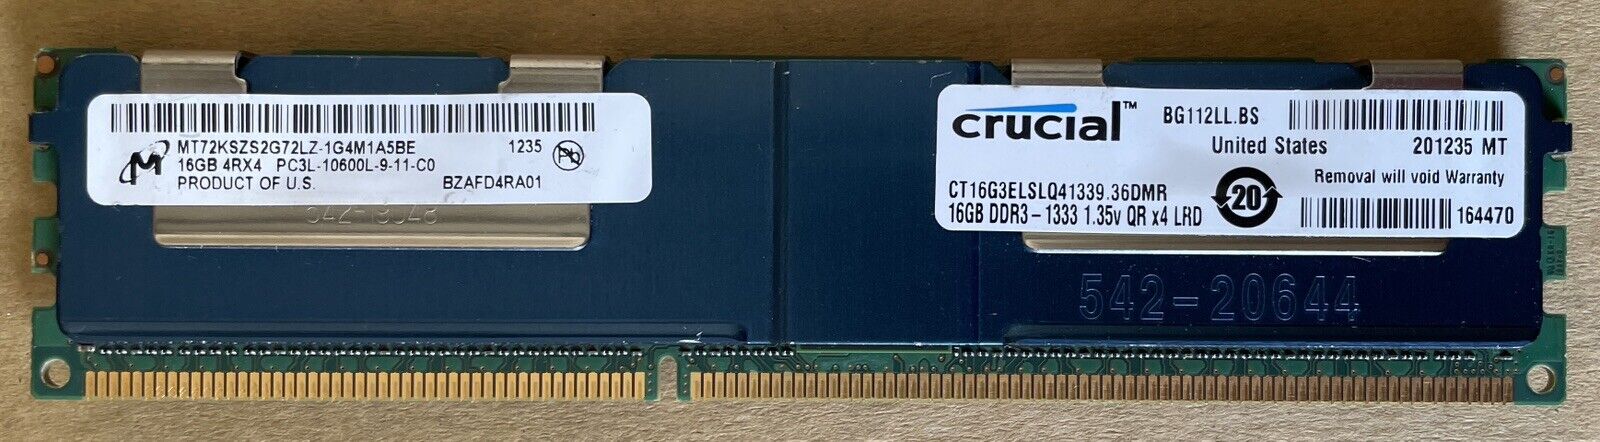 1x CRUCIAL / MICRON CT16G3ELSLQ41339 PC3L-10600L DDR3-1333 16GB ECC REG LRDIMM